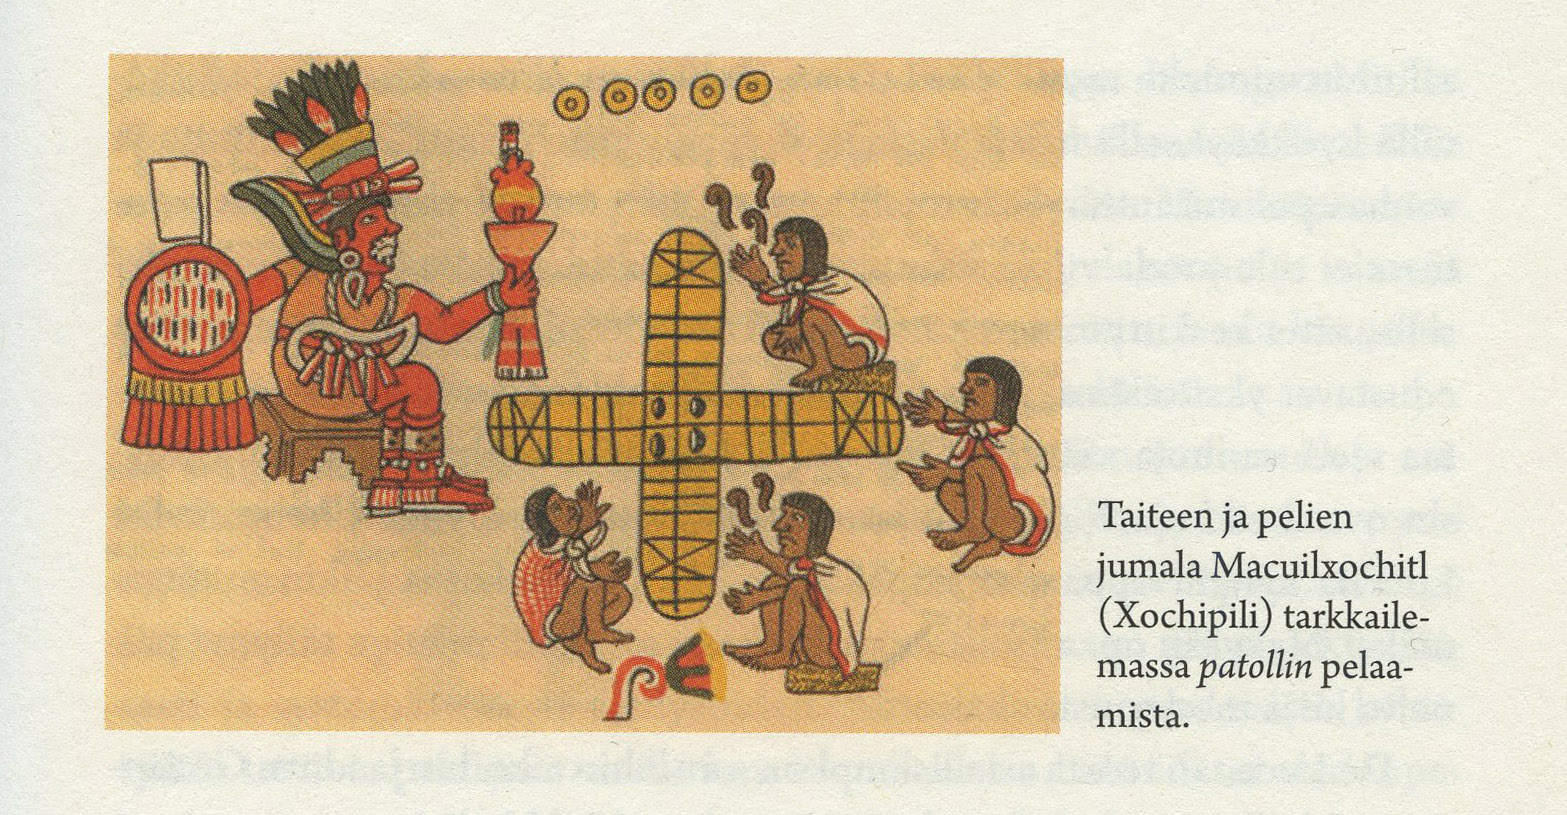 Taiteen ja pelien jumala Macuilxochitl (Xochipili) tarkkailemassa patollin pelaamista (kirjan kuvitusta).